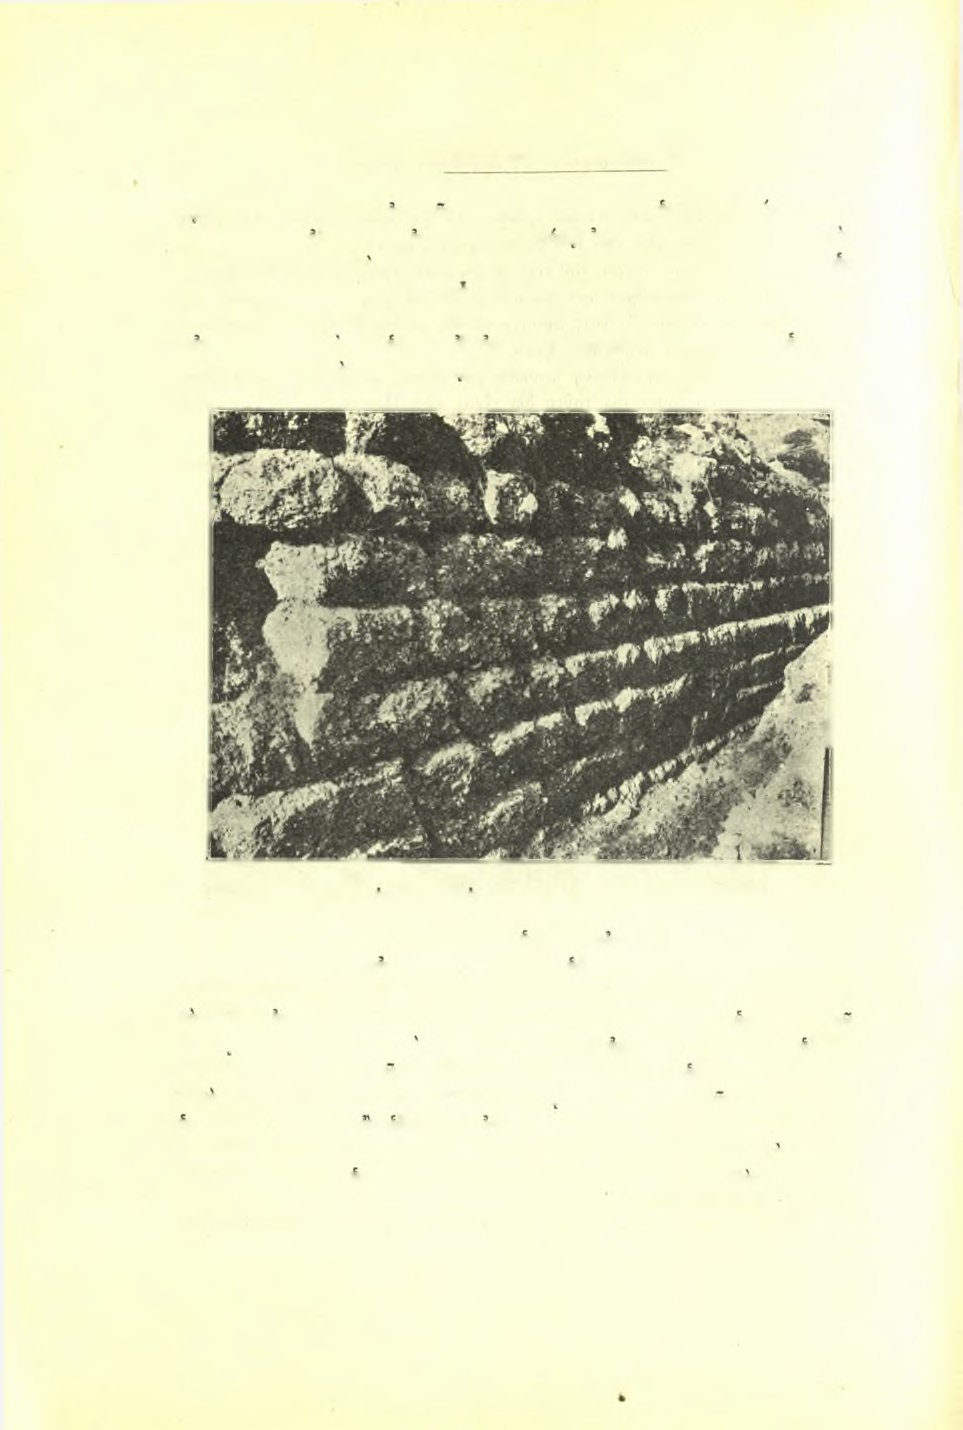 40 Πρακτικά τής 'Αρχαιολογικής Εταιρείας 1928 Ώδεΐον νά άνεκτίσθη επί των Ιδίων θεμελίων τοΰ υπό Περικλεούς ίδρυθέντος.